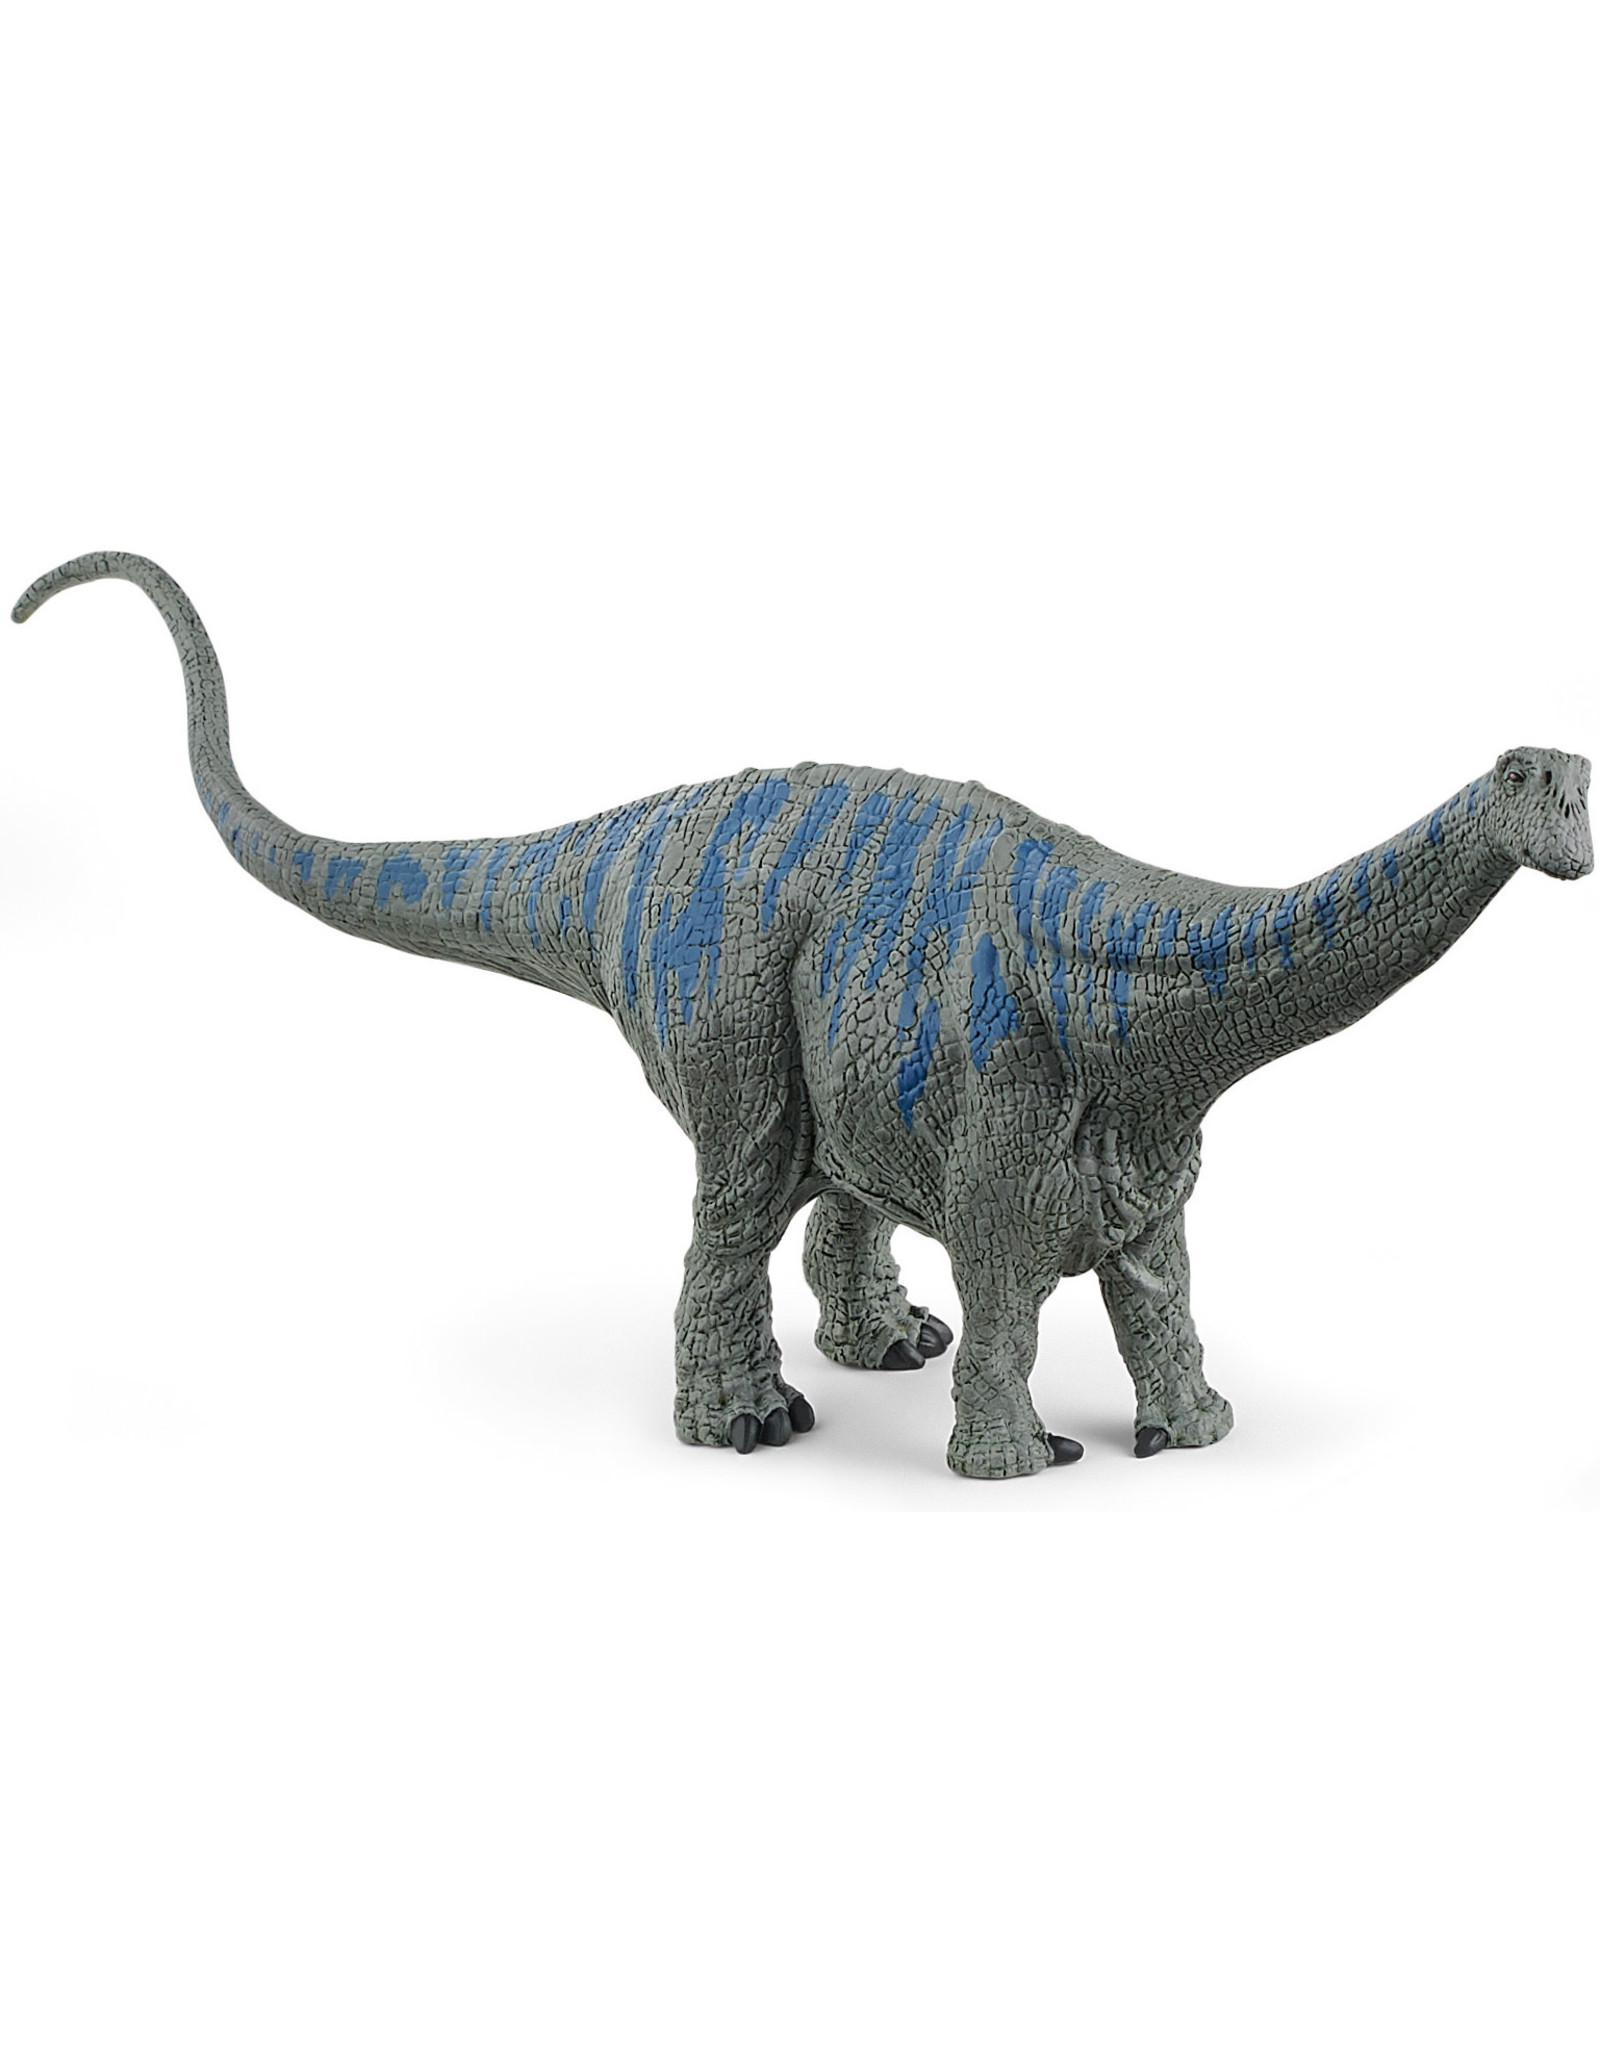 Schleich Schleich Dinosaurs 15027 Brontosaurus